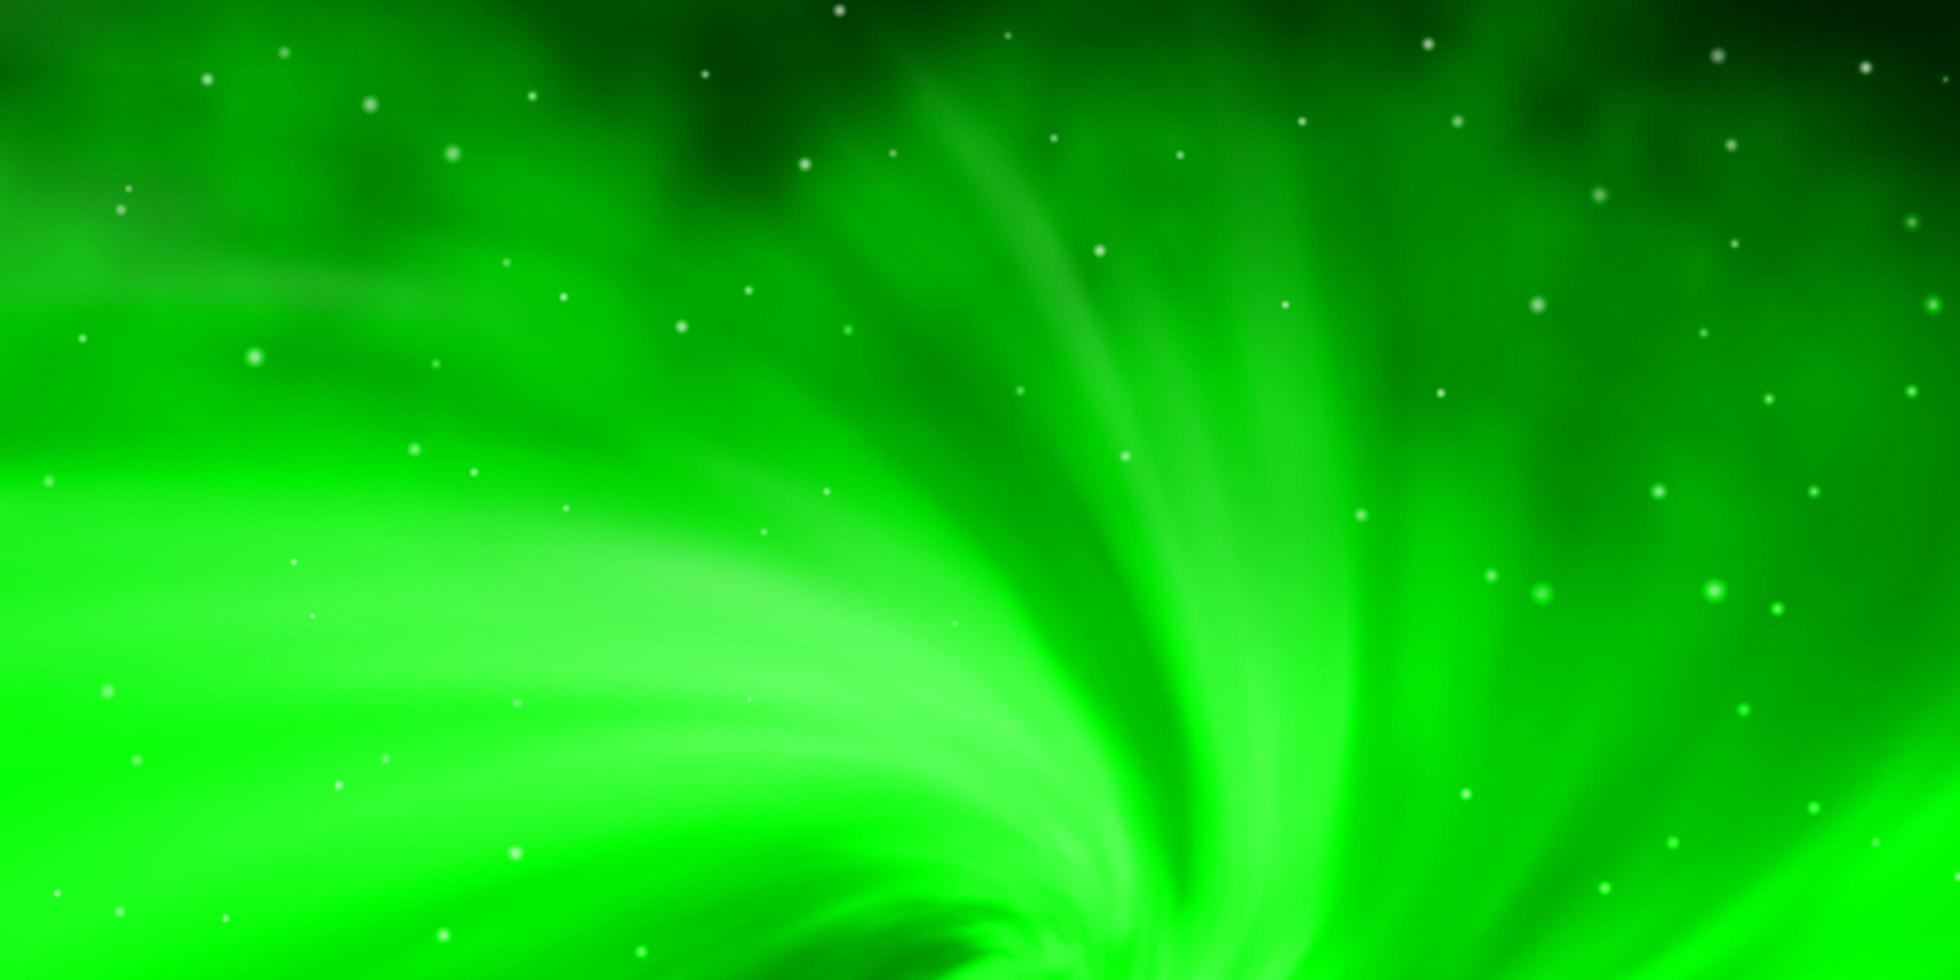 ljusgrön vektormall med neonstjärnor dekorativ illustration med stjärnor på abstrakt malltema för mobiltelefoner vektor